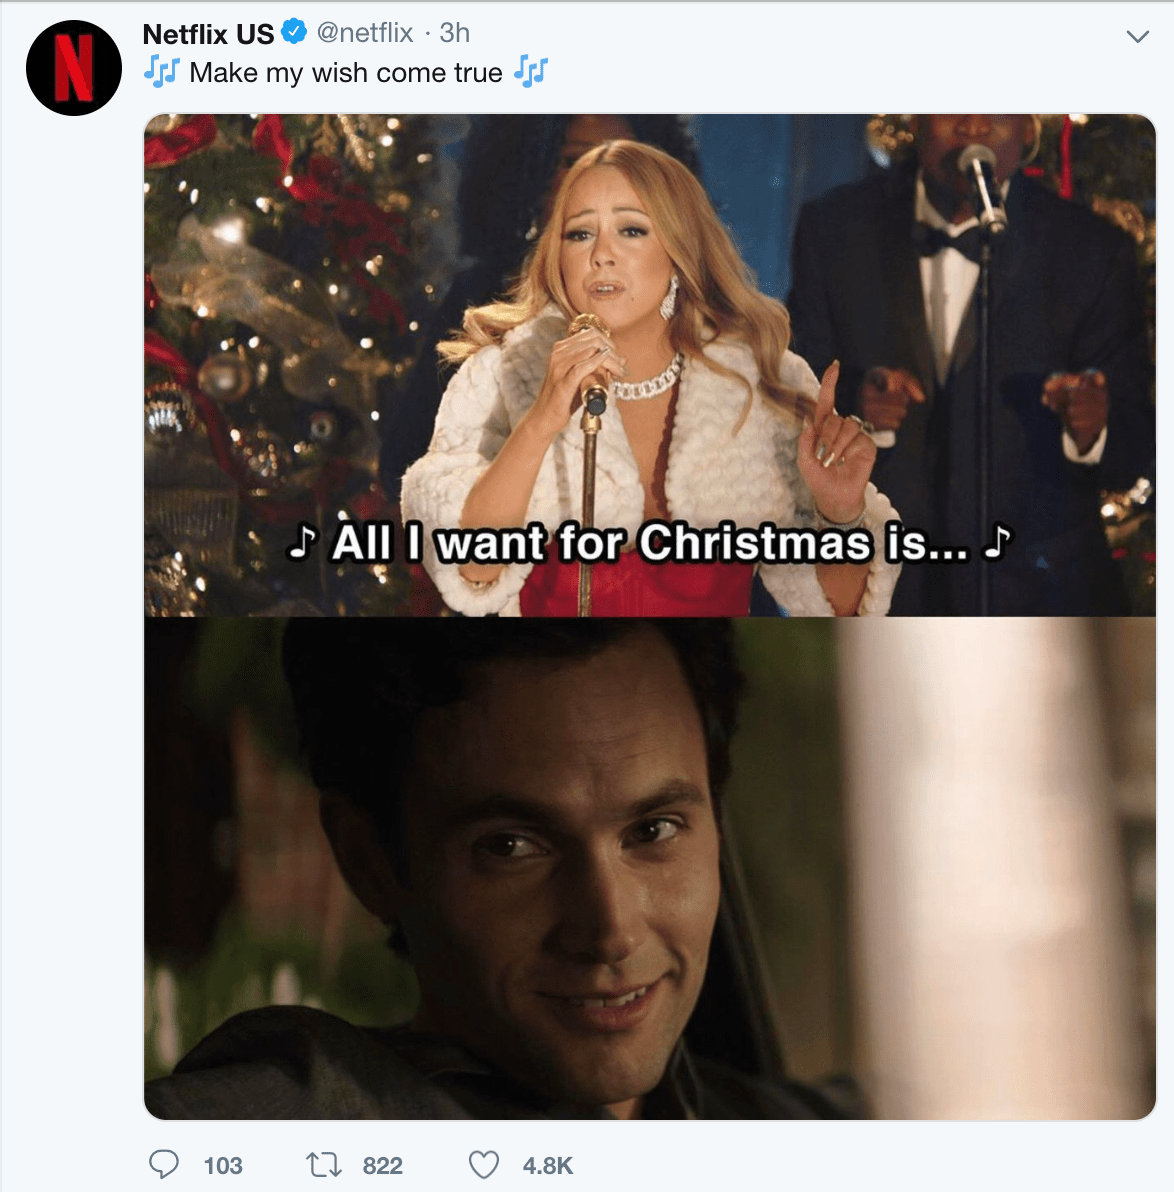 Netflix-funny-tweets-1.png